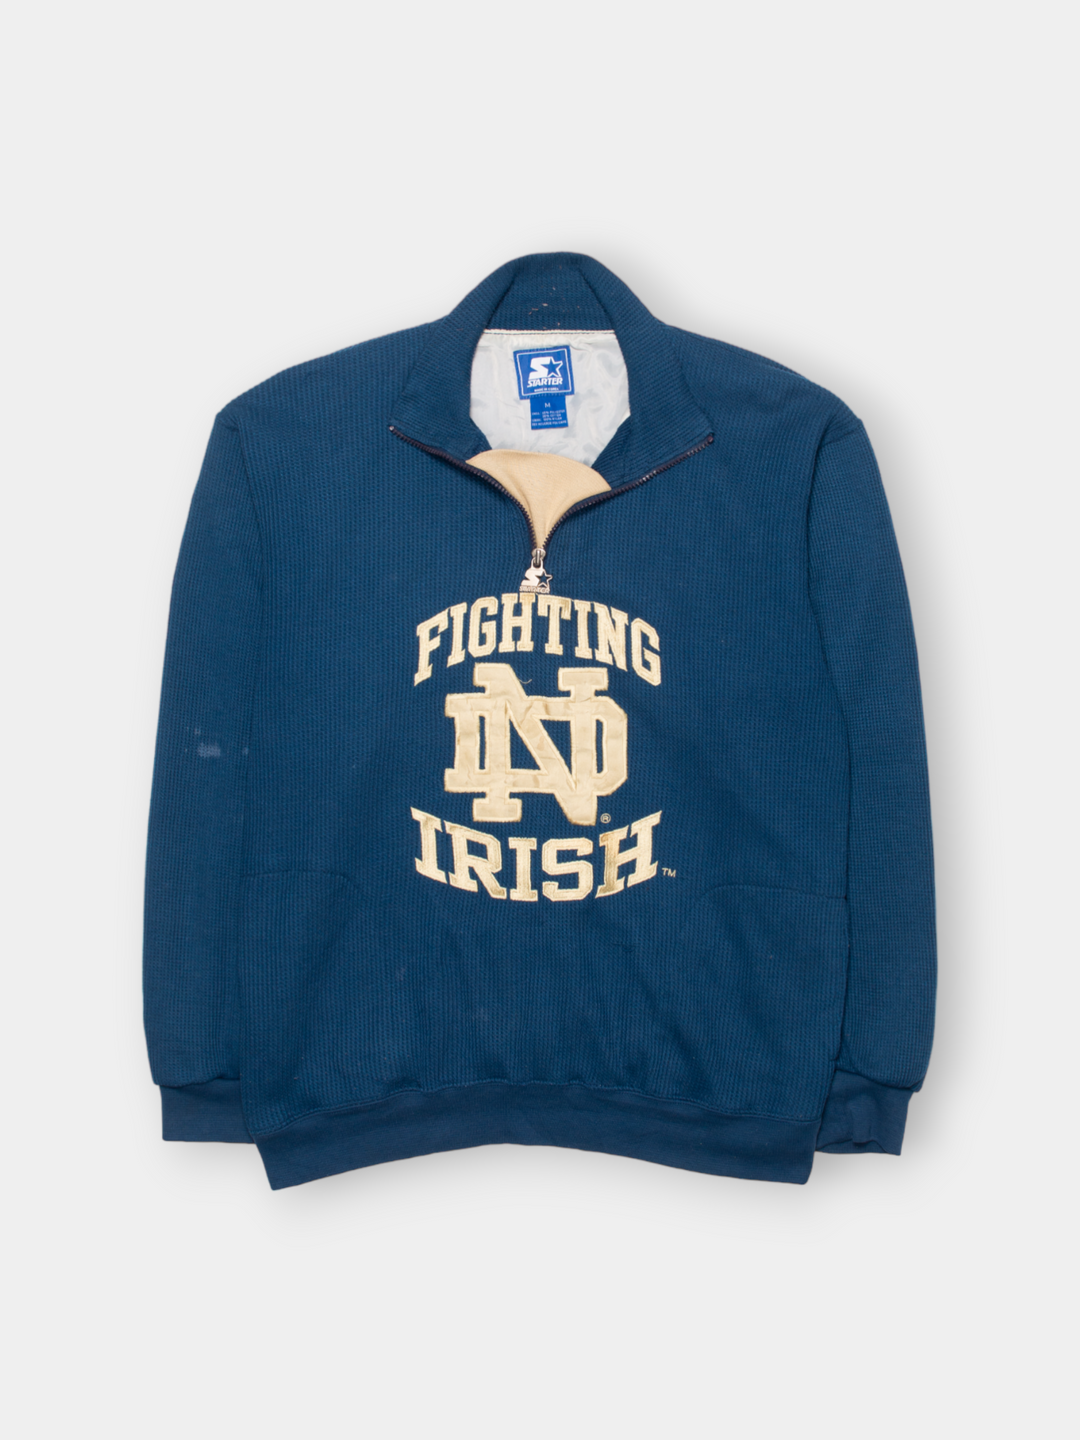 90s Starter Fighting Irish Sweater (M)